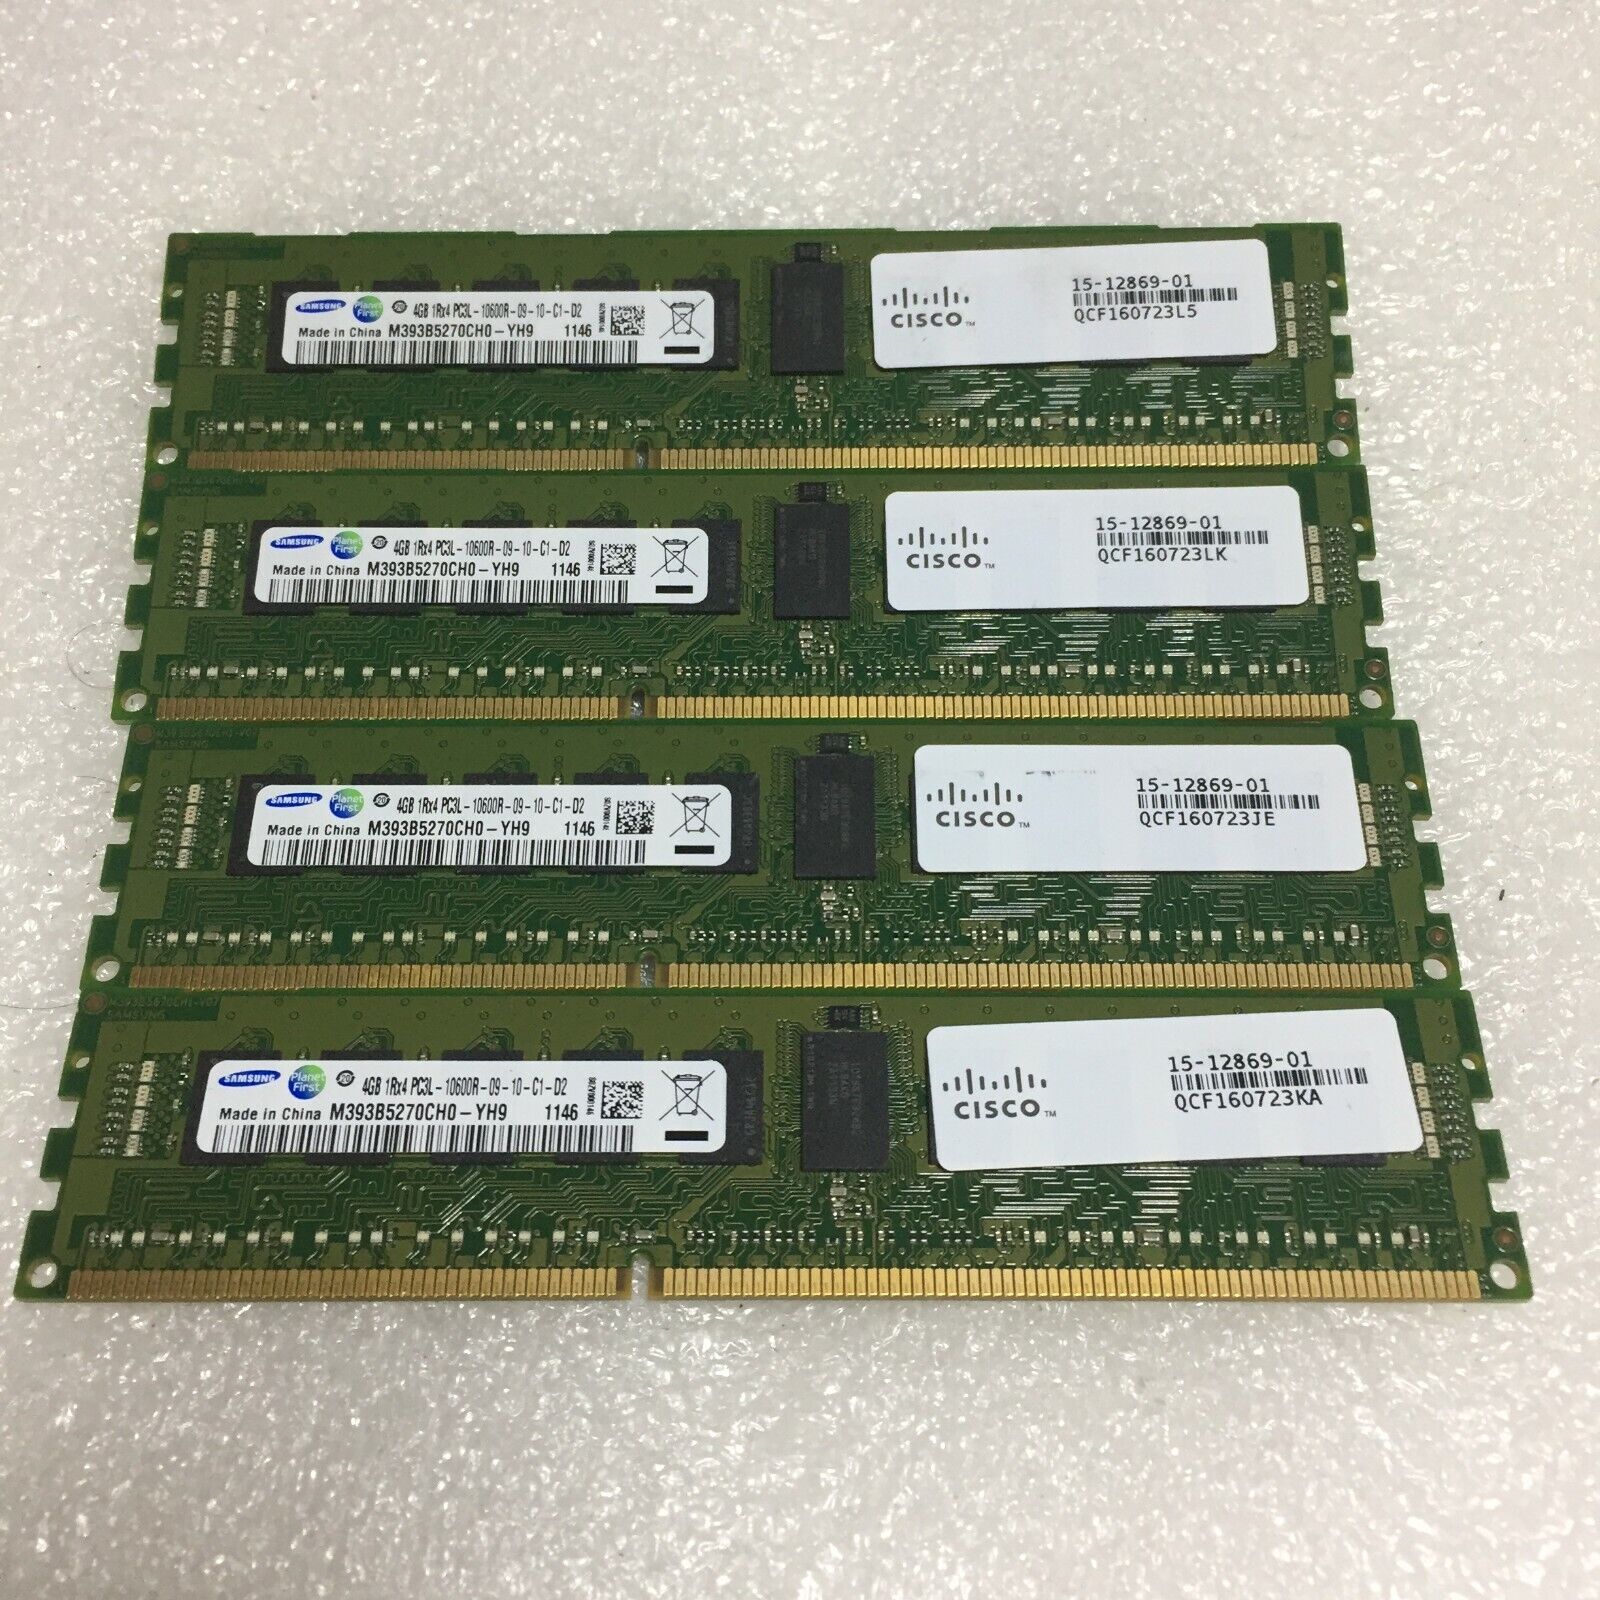 Samsung 4GB (16GB) PC3L-10600R DDR3-1333Mhz ECC Reg Server RAM M393B5270CH0-YH9